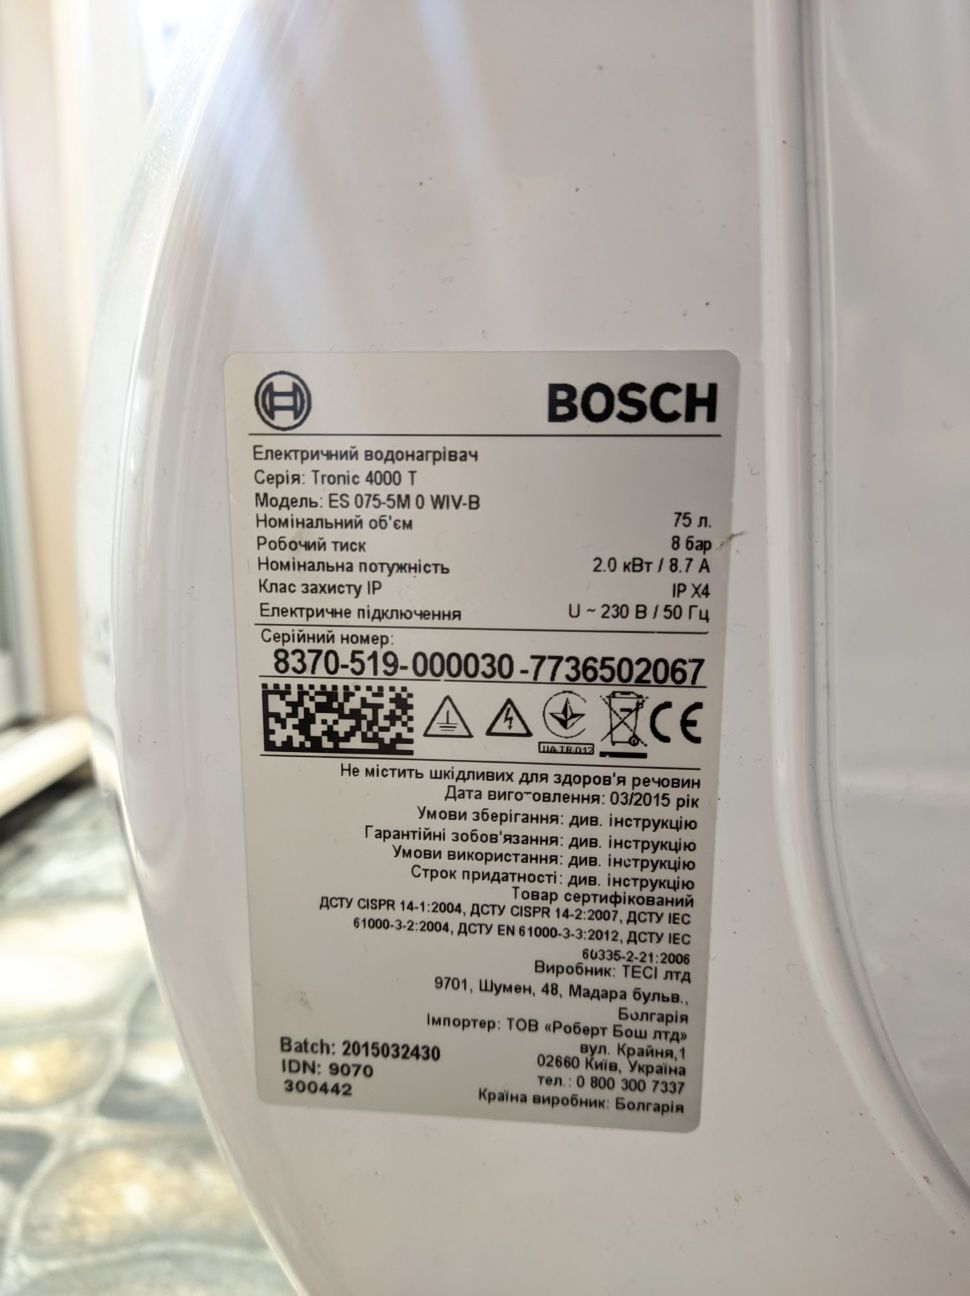 Електричний водонагрівач Bosch Tronic 4000 T Бойлер

Серія: Тгопіс 400